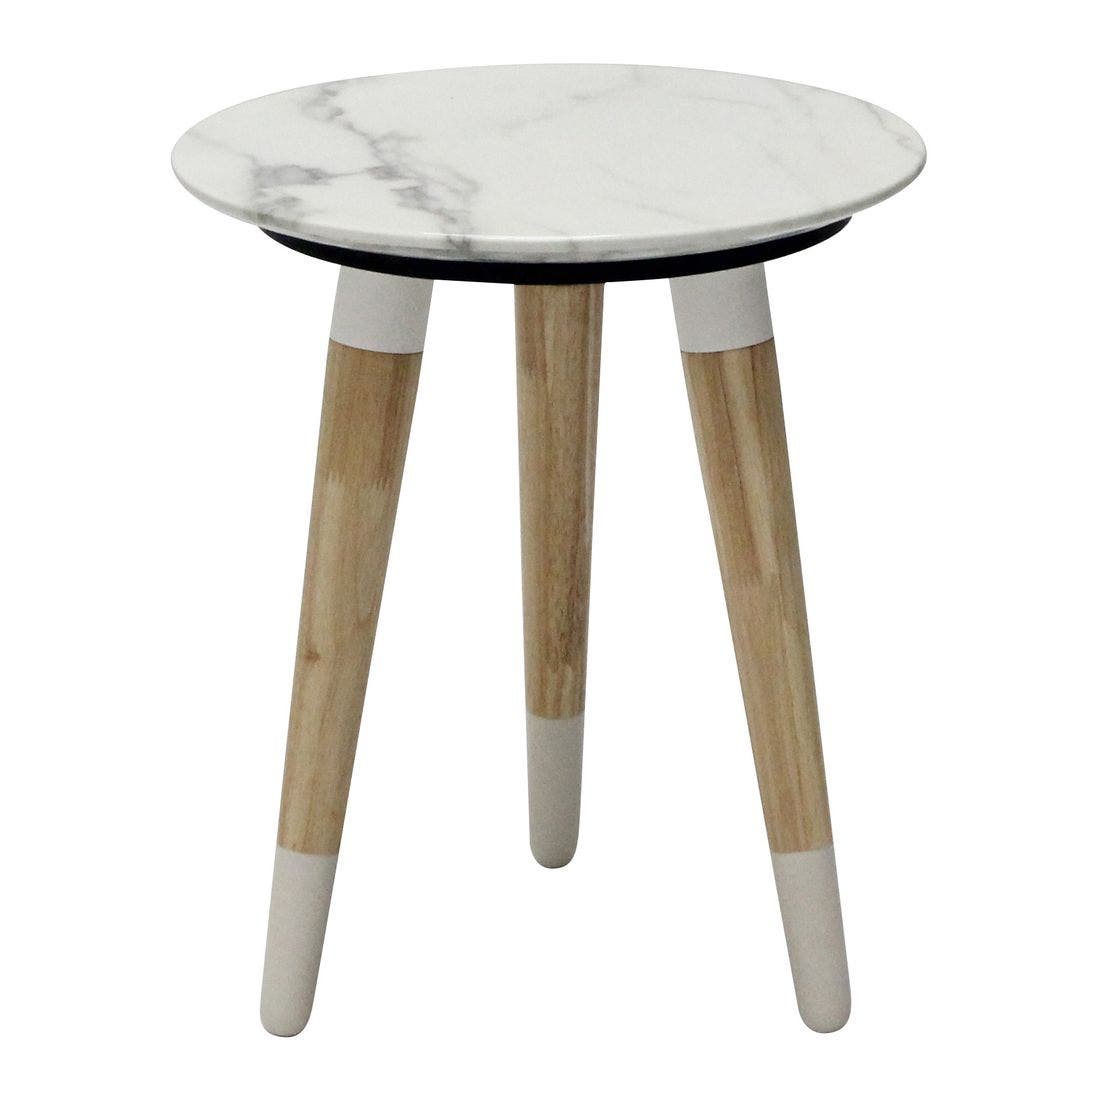 โต๊ะข้าง โต๊ะข้างไม้ท๊อปหิน รุ่น Racco สีสีขาว-SB Design Square